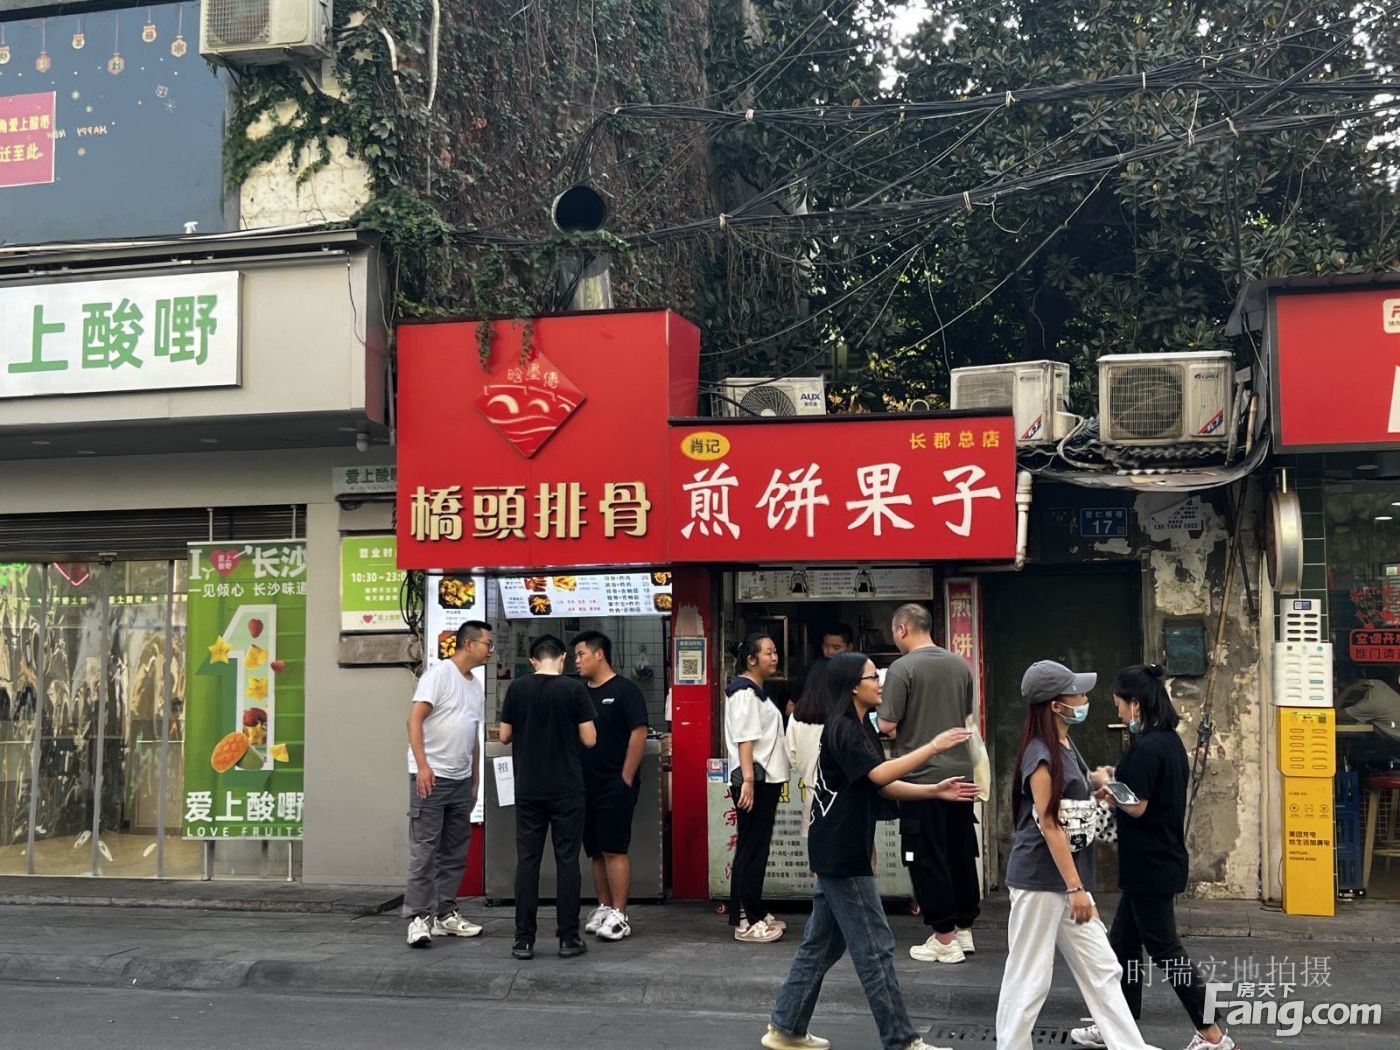 网红小吃店,总价只要60万,双门头,两个业态,学生必经之路.